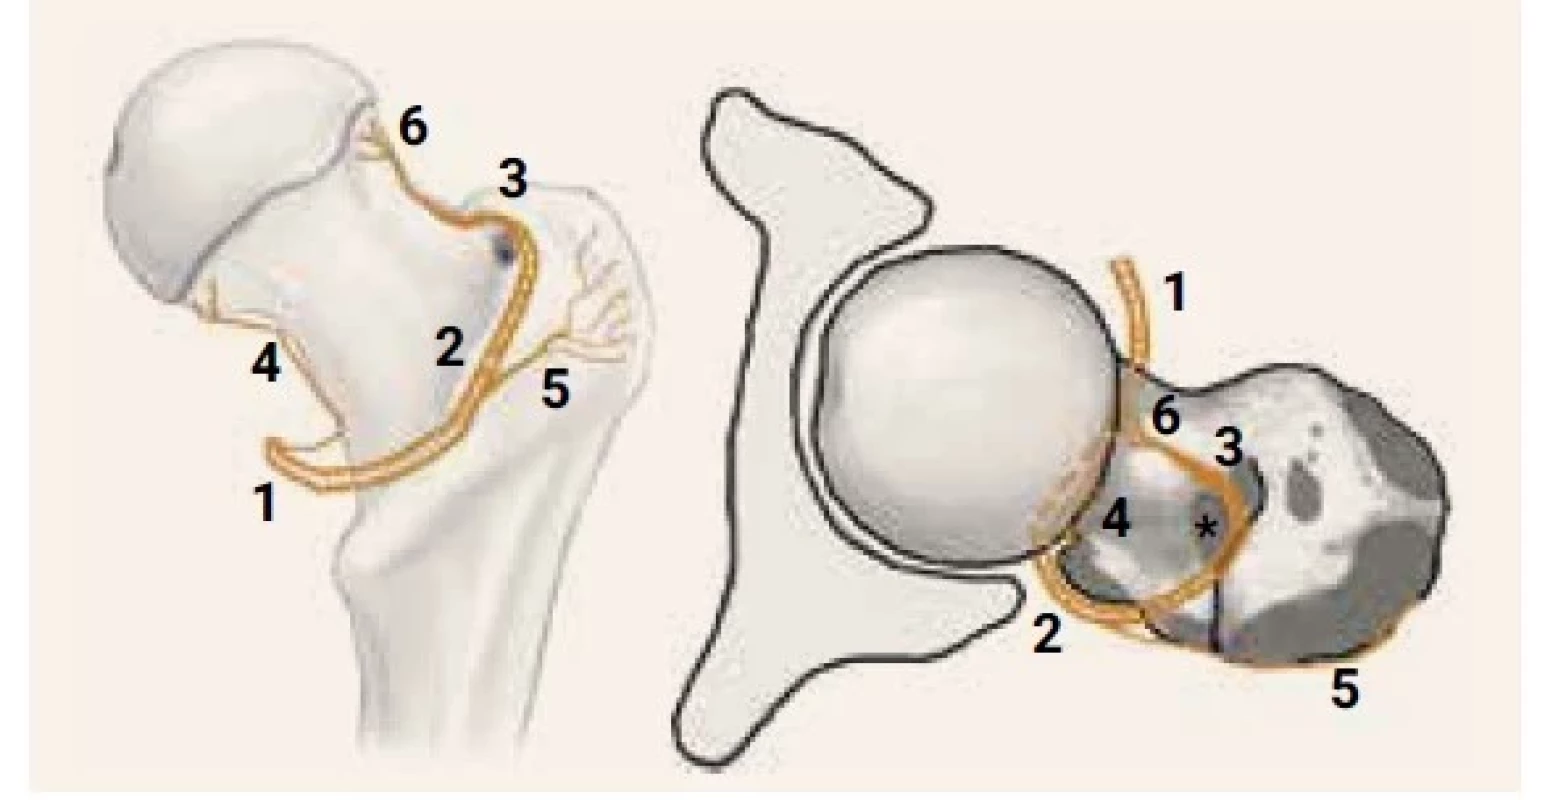 Schematické znázornenie priebehu MFCA.
Pohľad na pravý proximálny femur zhora
(obr. 3.1). Pohľad na pravý proximálny femur
zozadu (obr. 3.2)